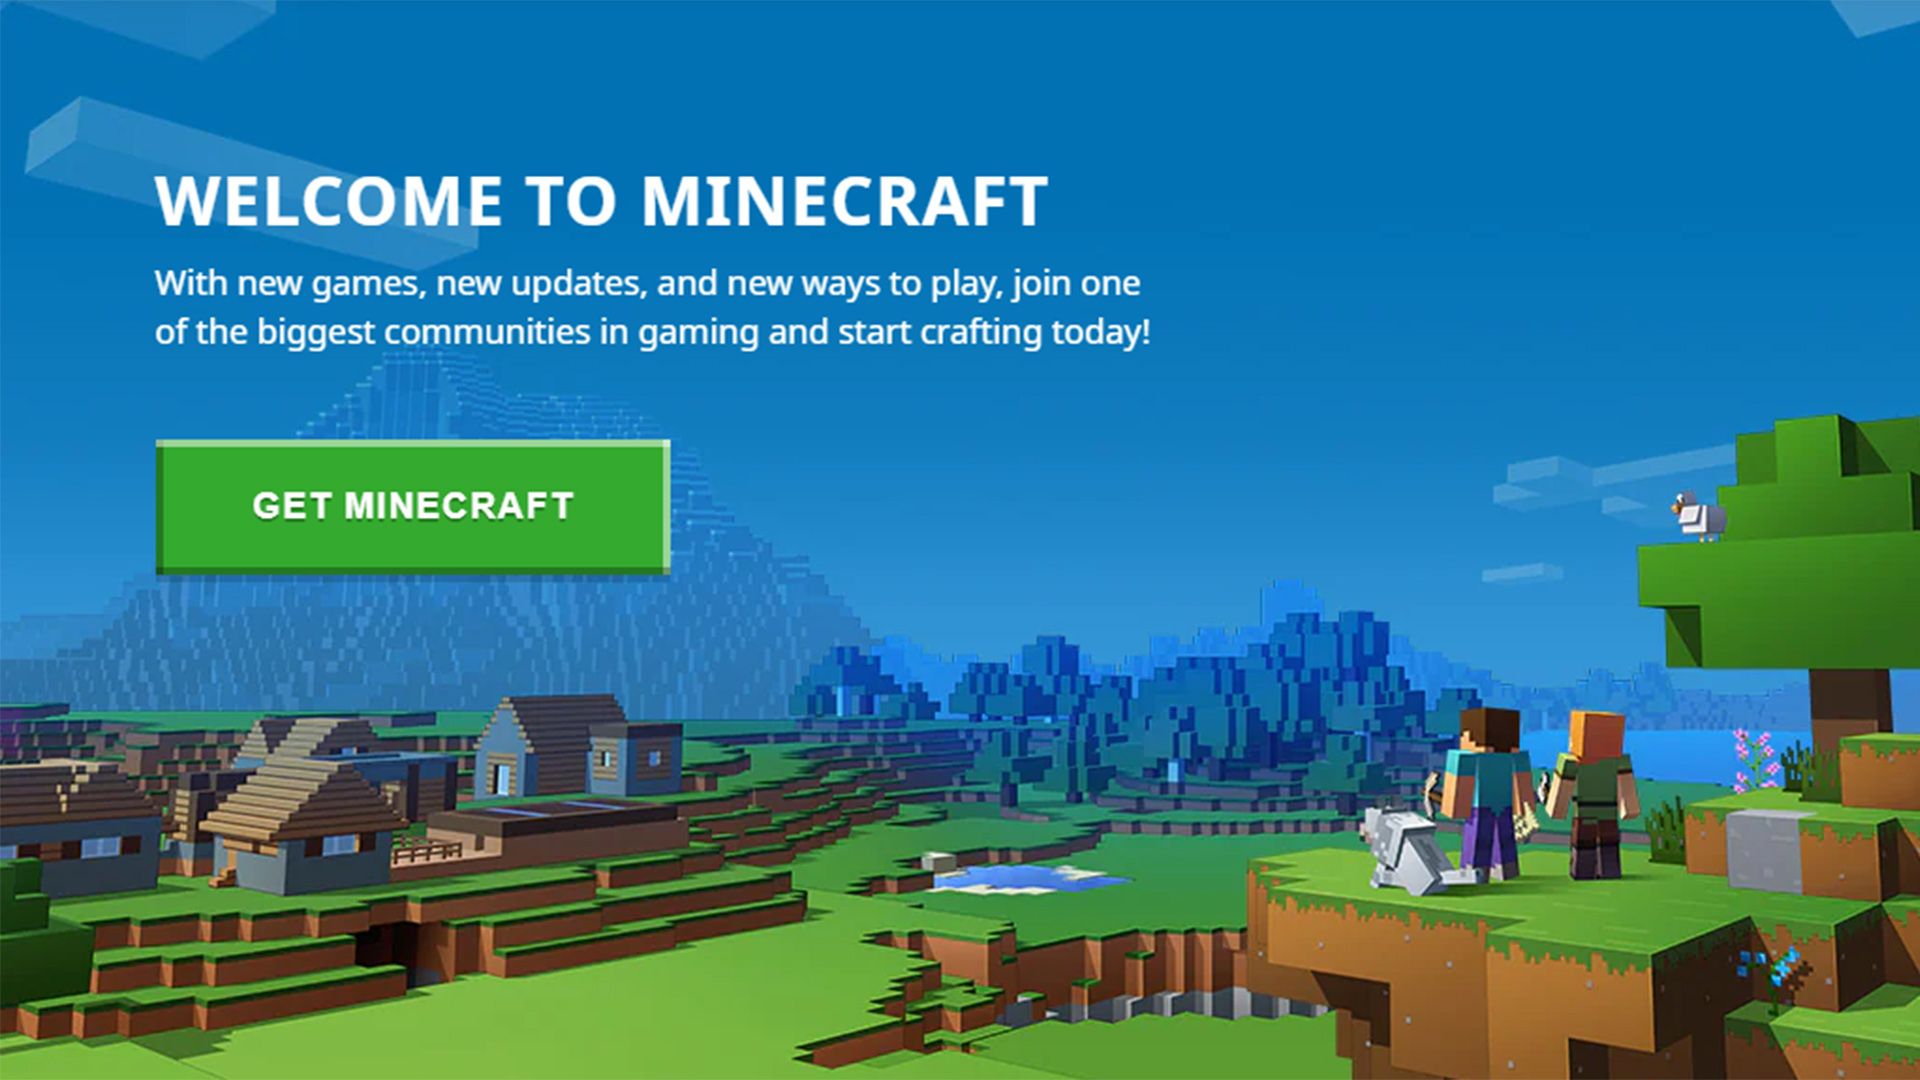 get minecraft window screenshot - Come installare OptiFine per Minecraft